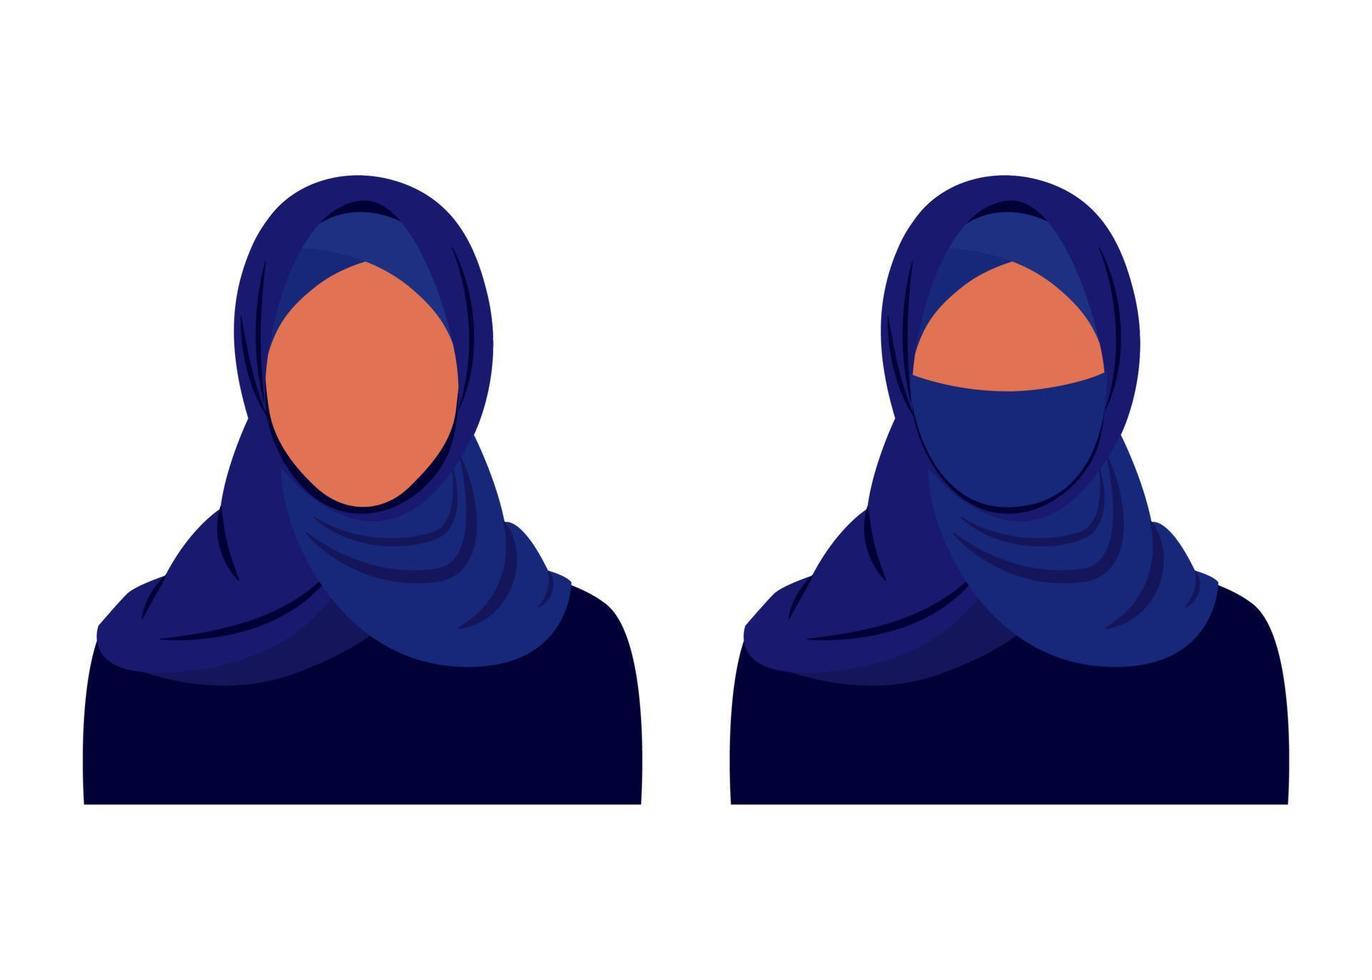 mujer musulmana abstracta con ropa tradicional de hiyab oscuro abre y cierra la cara. chica árabe vestida. ilustración vectorial aislada vector